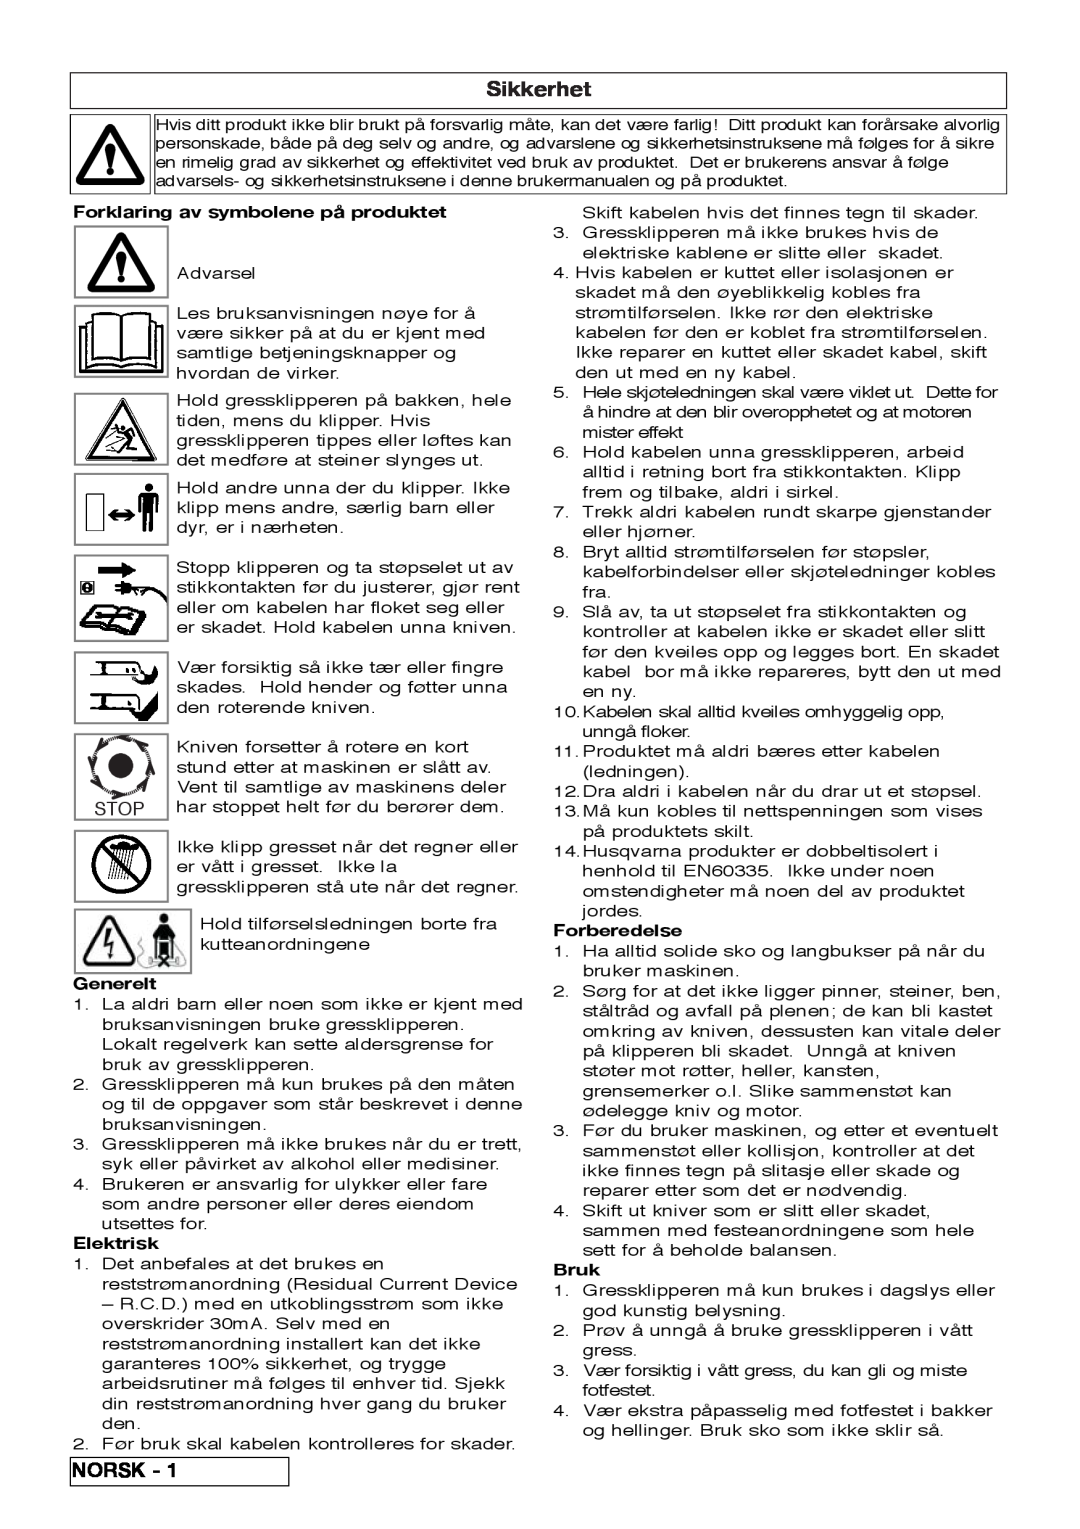 Flymo VM032 manual Sikkerhet, Norsk, Forklaring av symbolene på produktet, Generelt, Elektrisk, Forberedelse, Bruk 